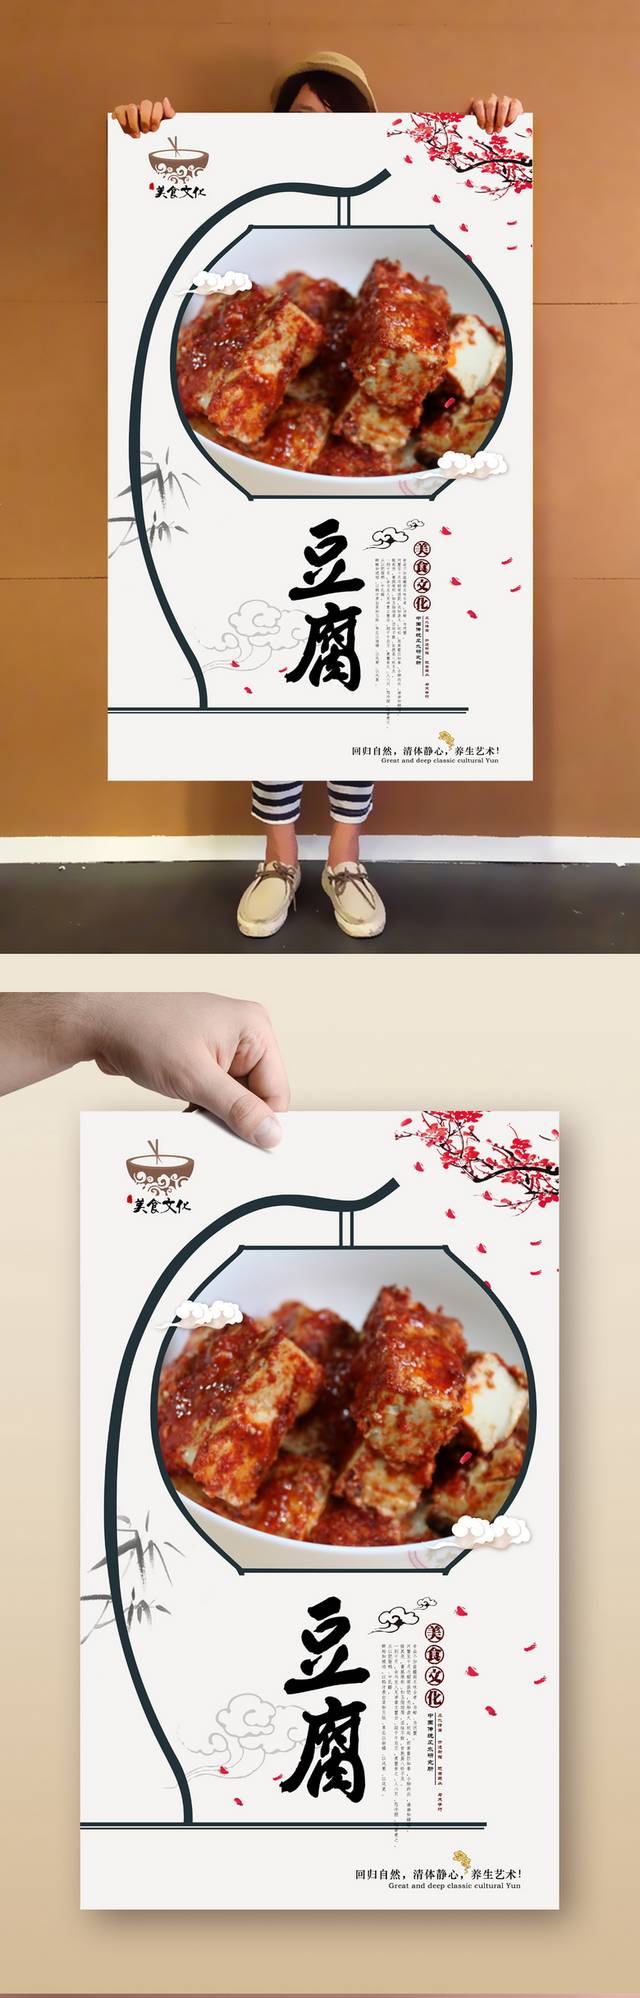 精美豆腐乳宣传海报设计